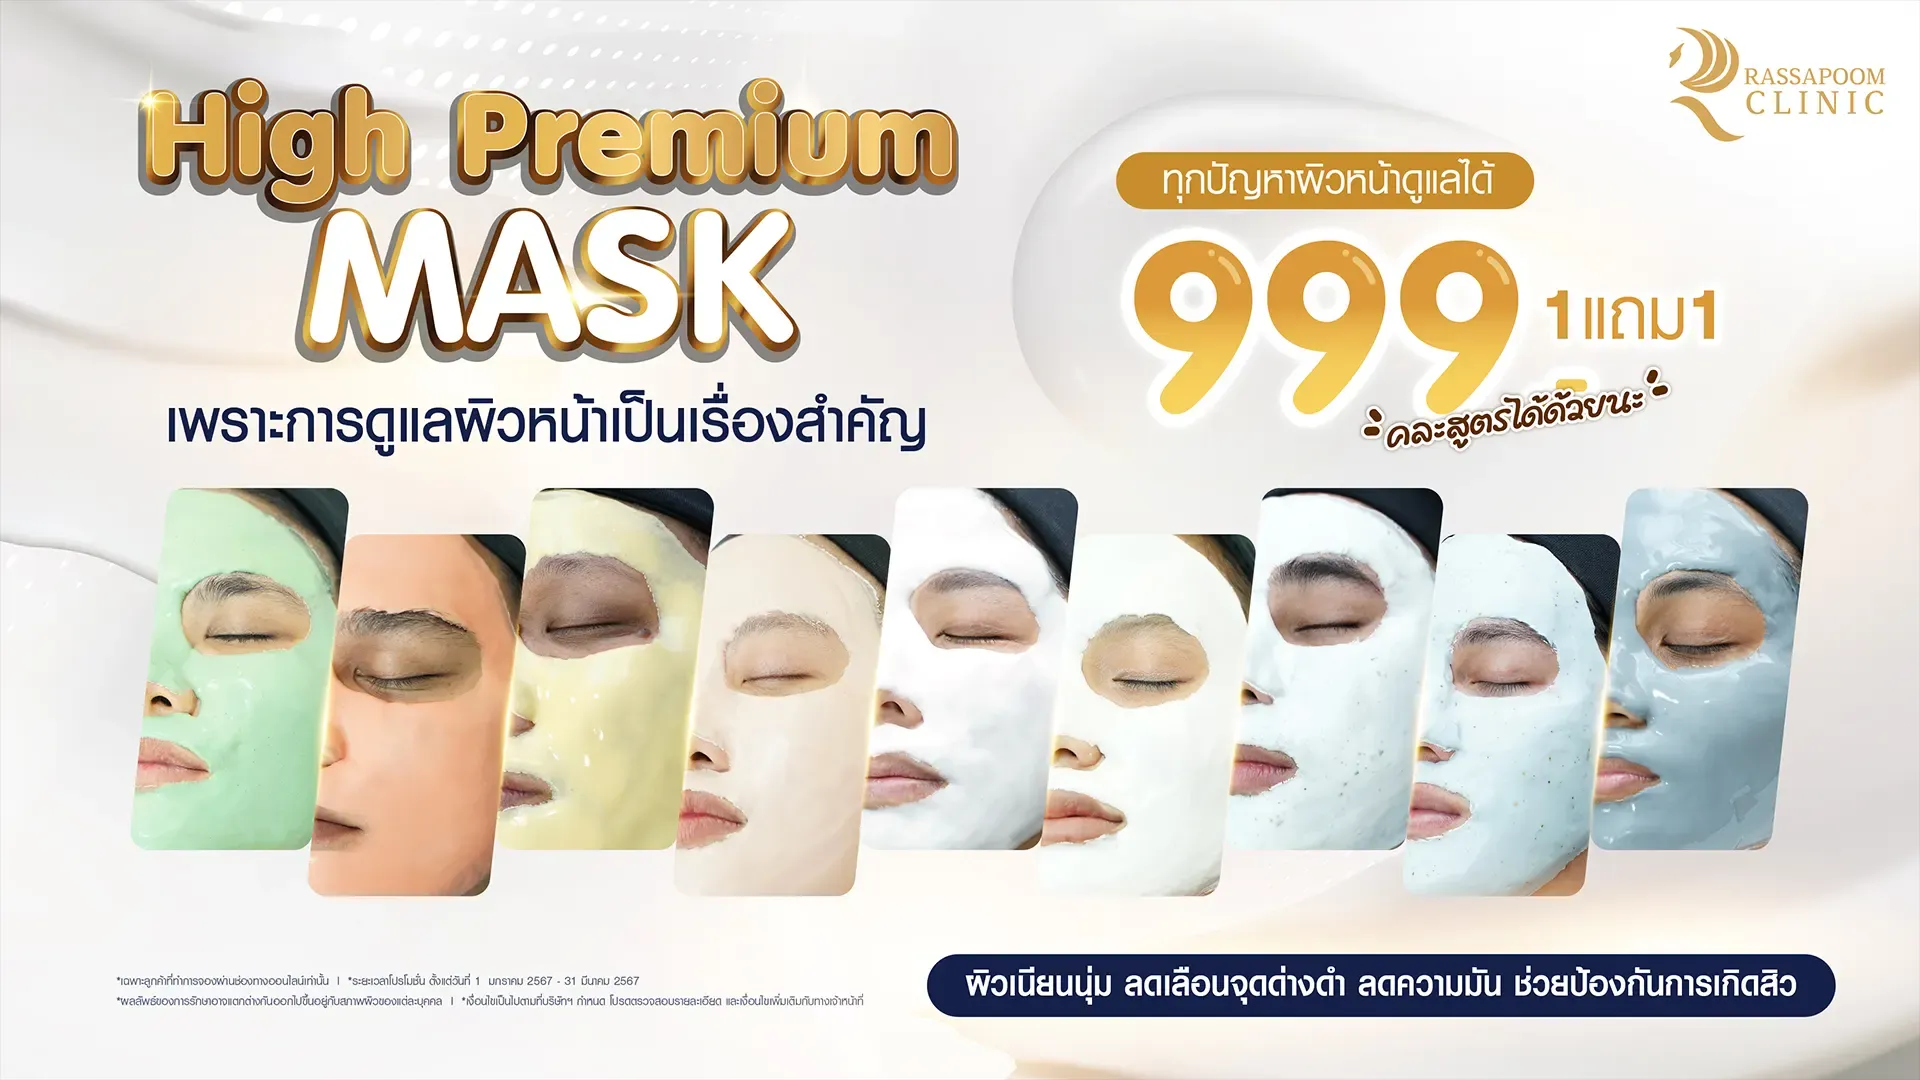 มาส์กหน้า High Premium Mask คืออะไร ช่วยบำรุงผิวอย่างไร